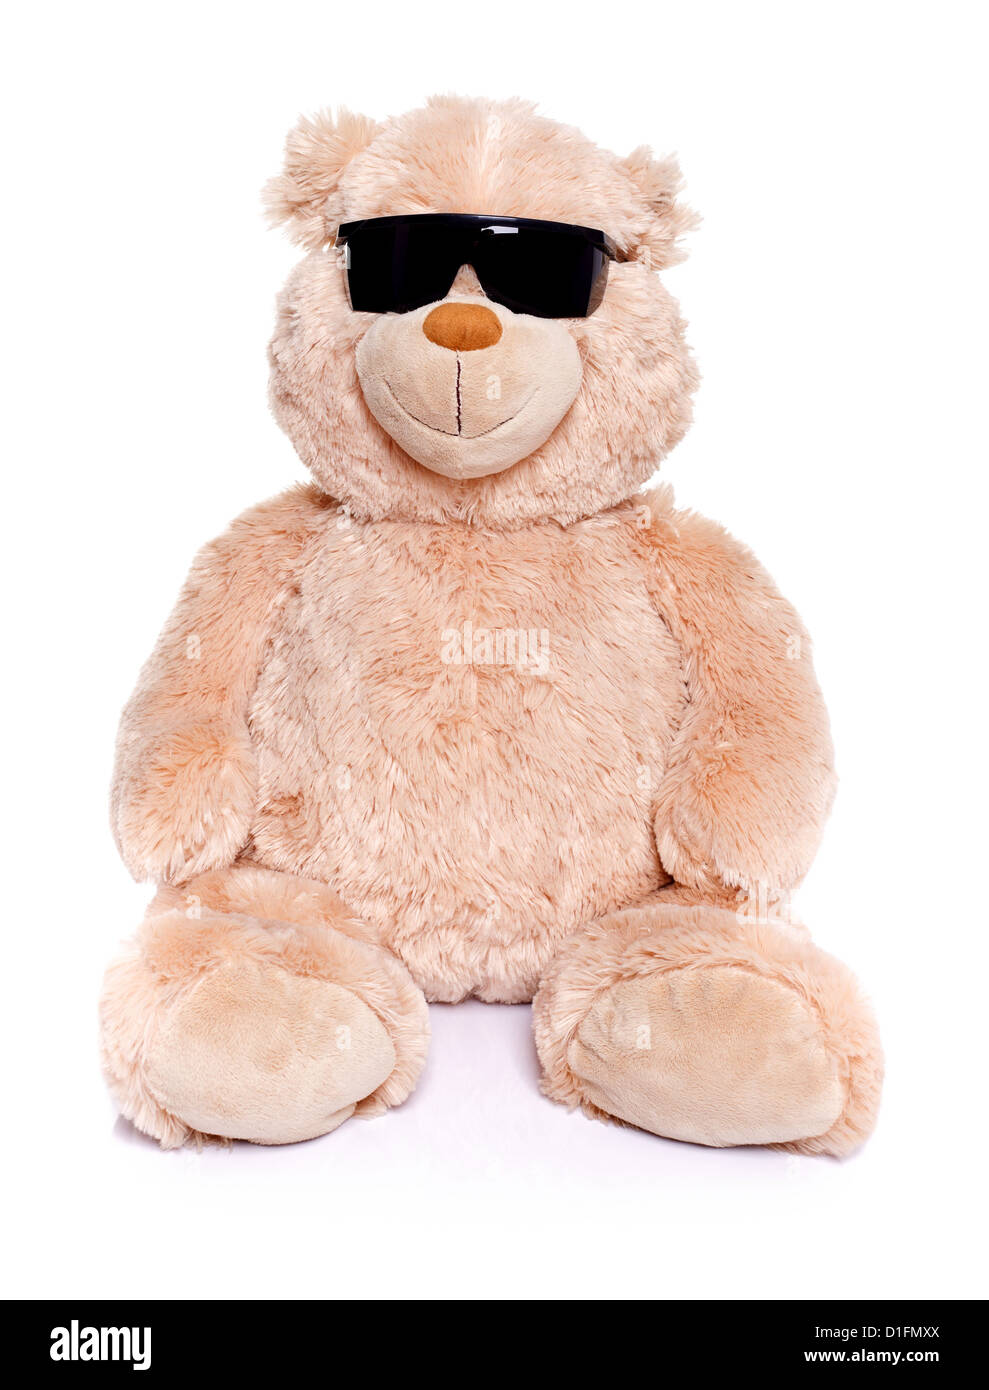 Teddy Bär sitzend über weißen Hintergrund mit schwarzer Sonnenbrille Stockfoto